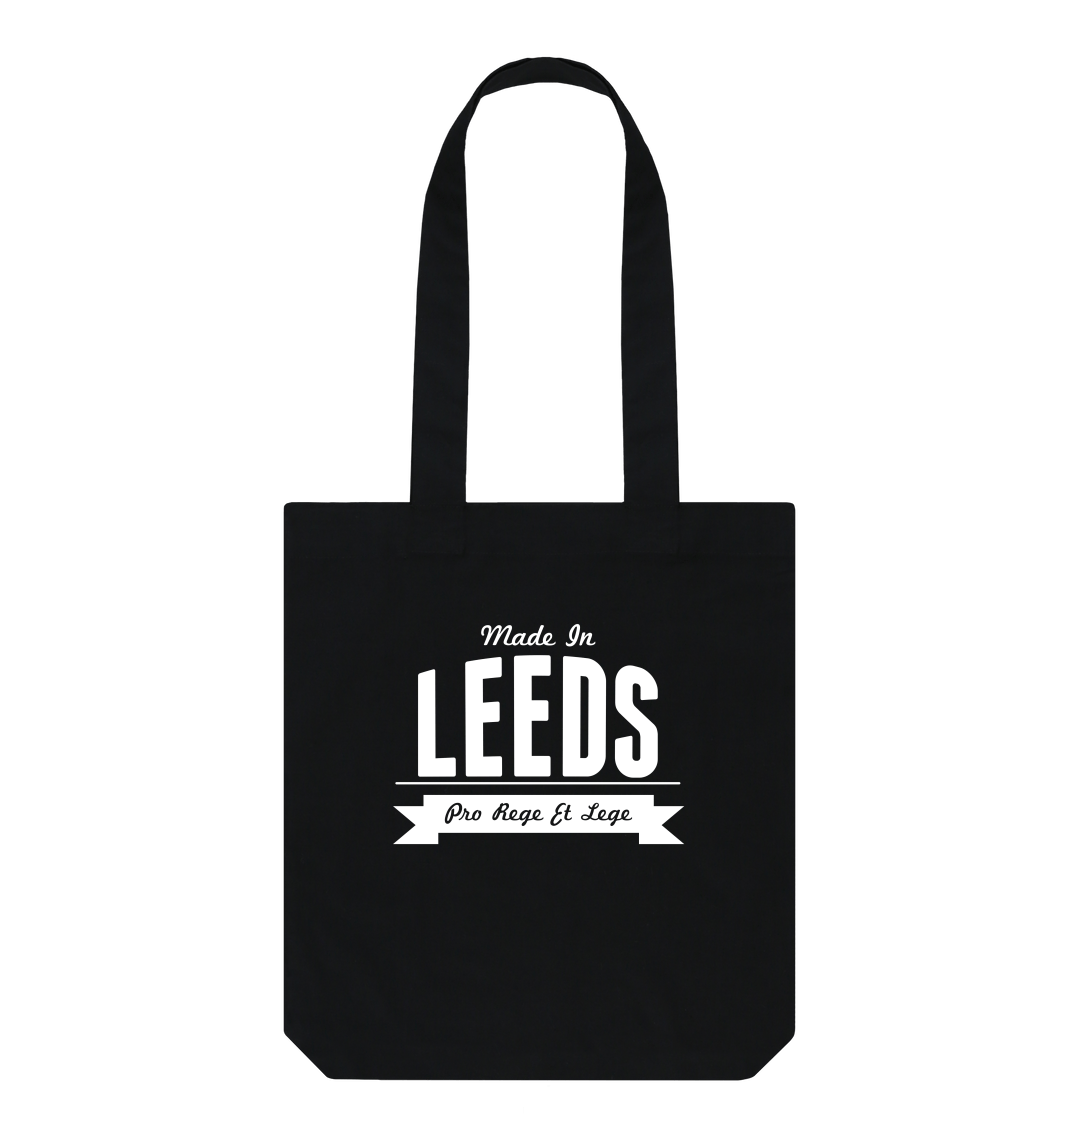 Churchill bags Leeds shopping centre deal - FMJ